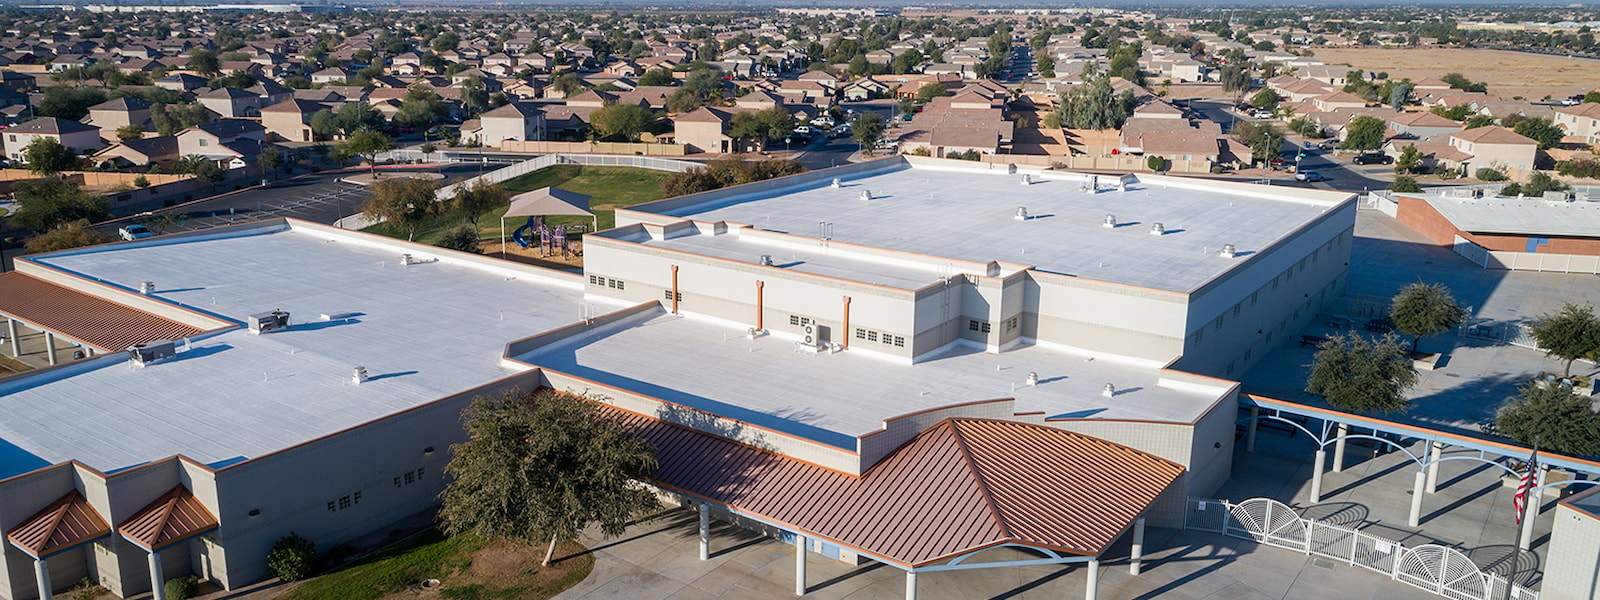 Aerial view of el mirage elementary school.